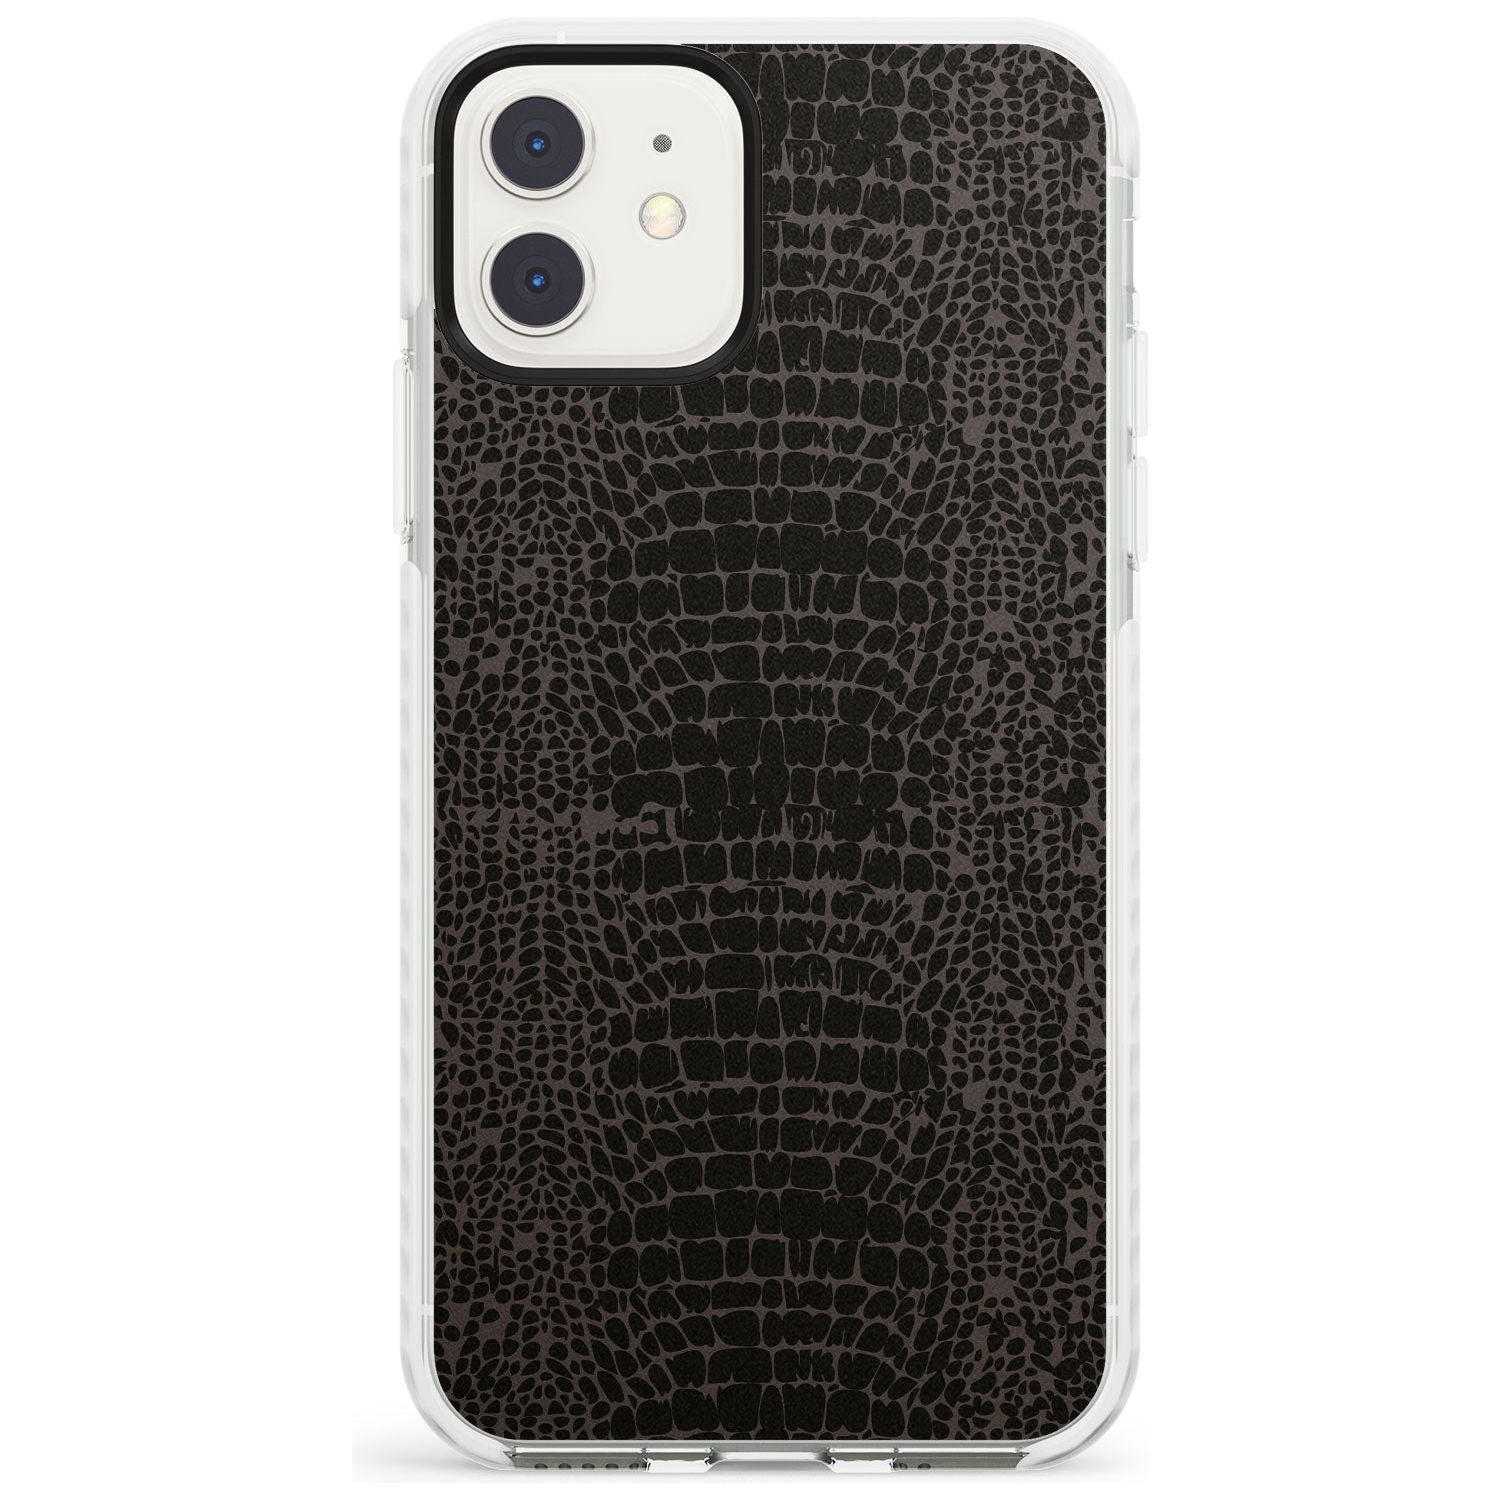 Dark Animal Print Pattern Snake Skin Impact Phone Case for iPhone 11